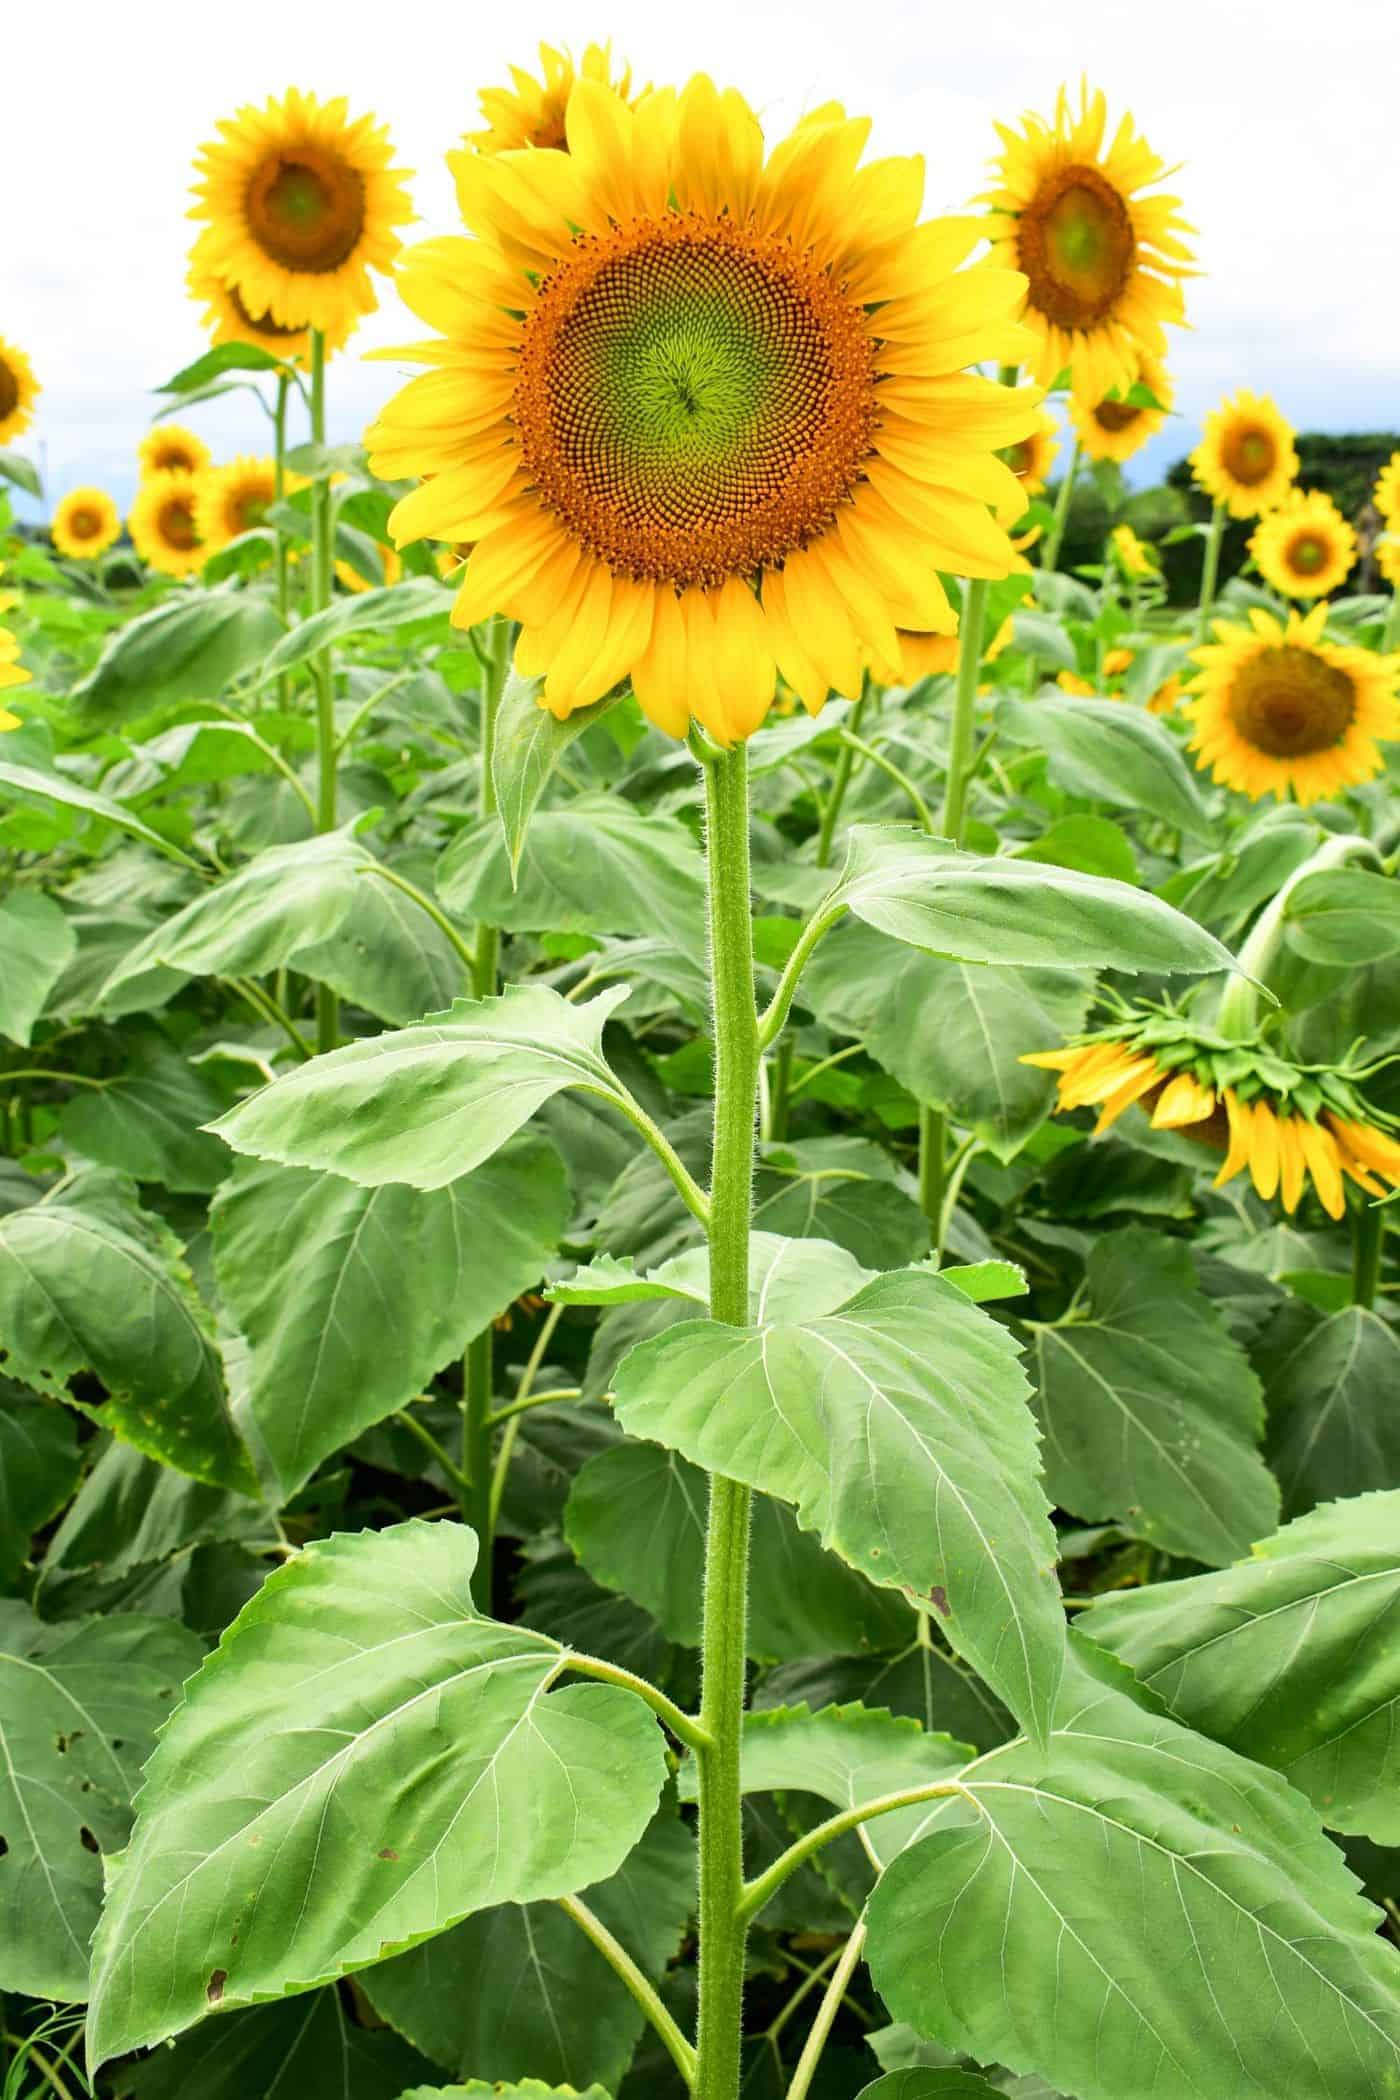 Black oil sunflower